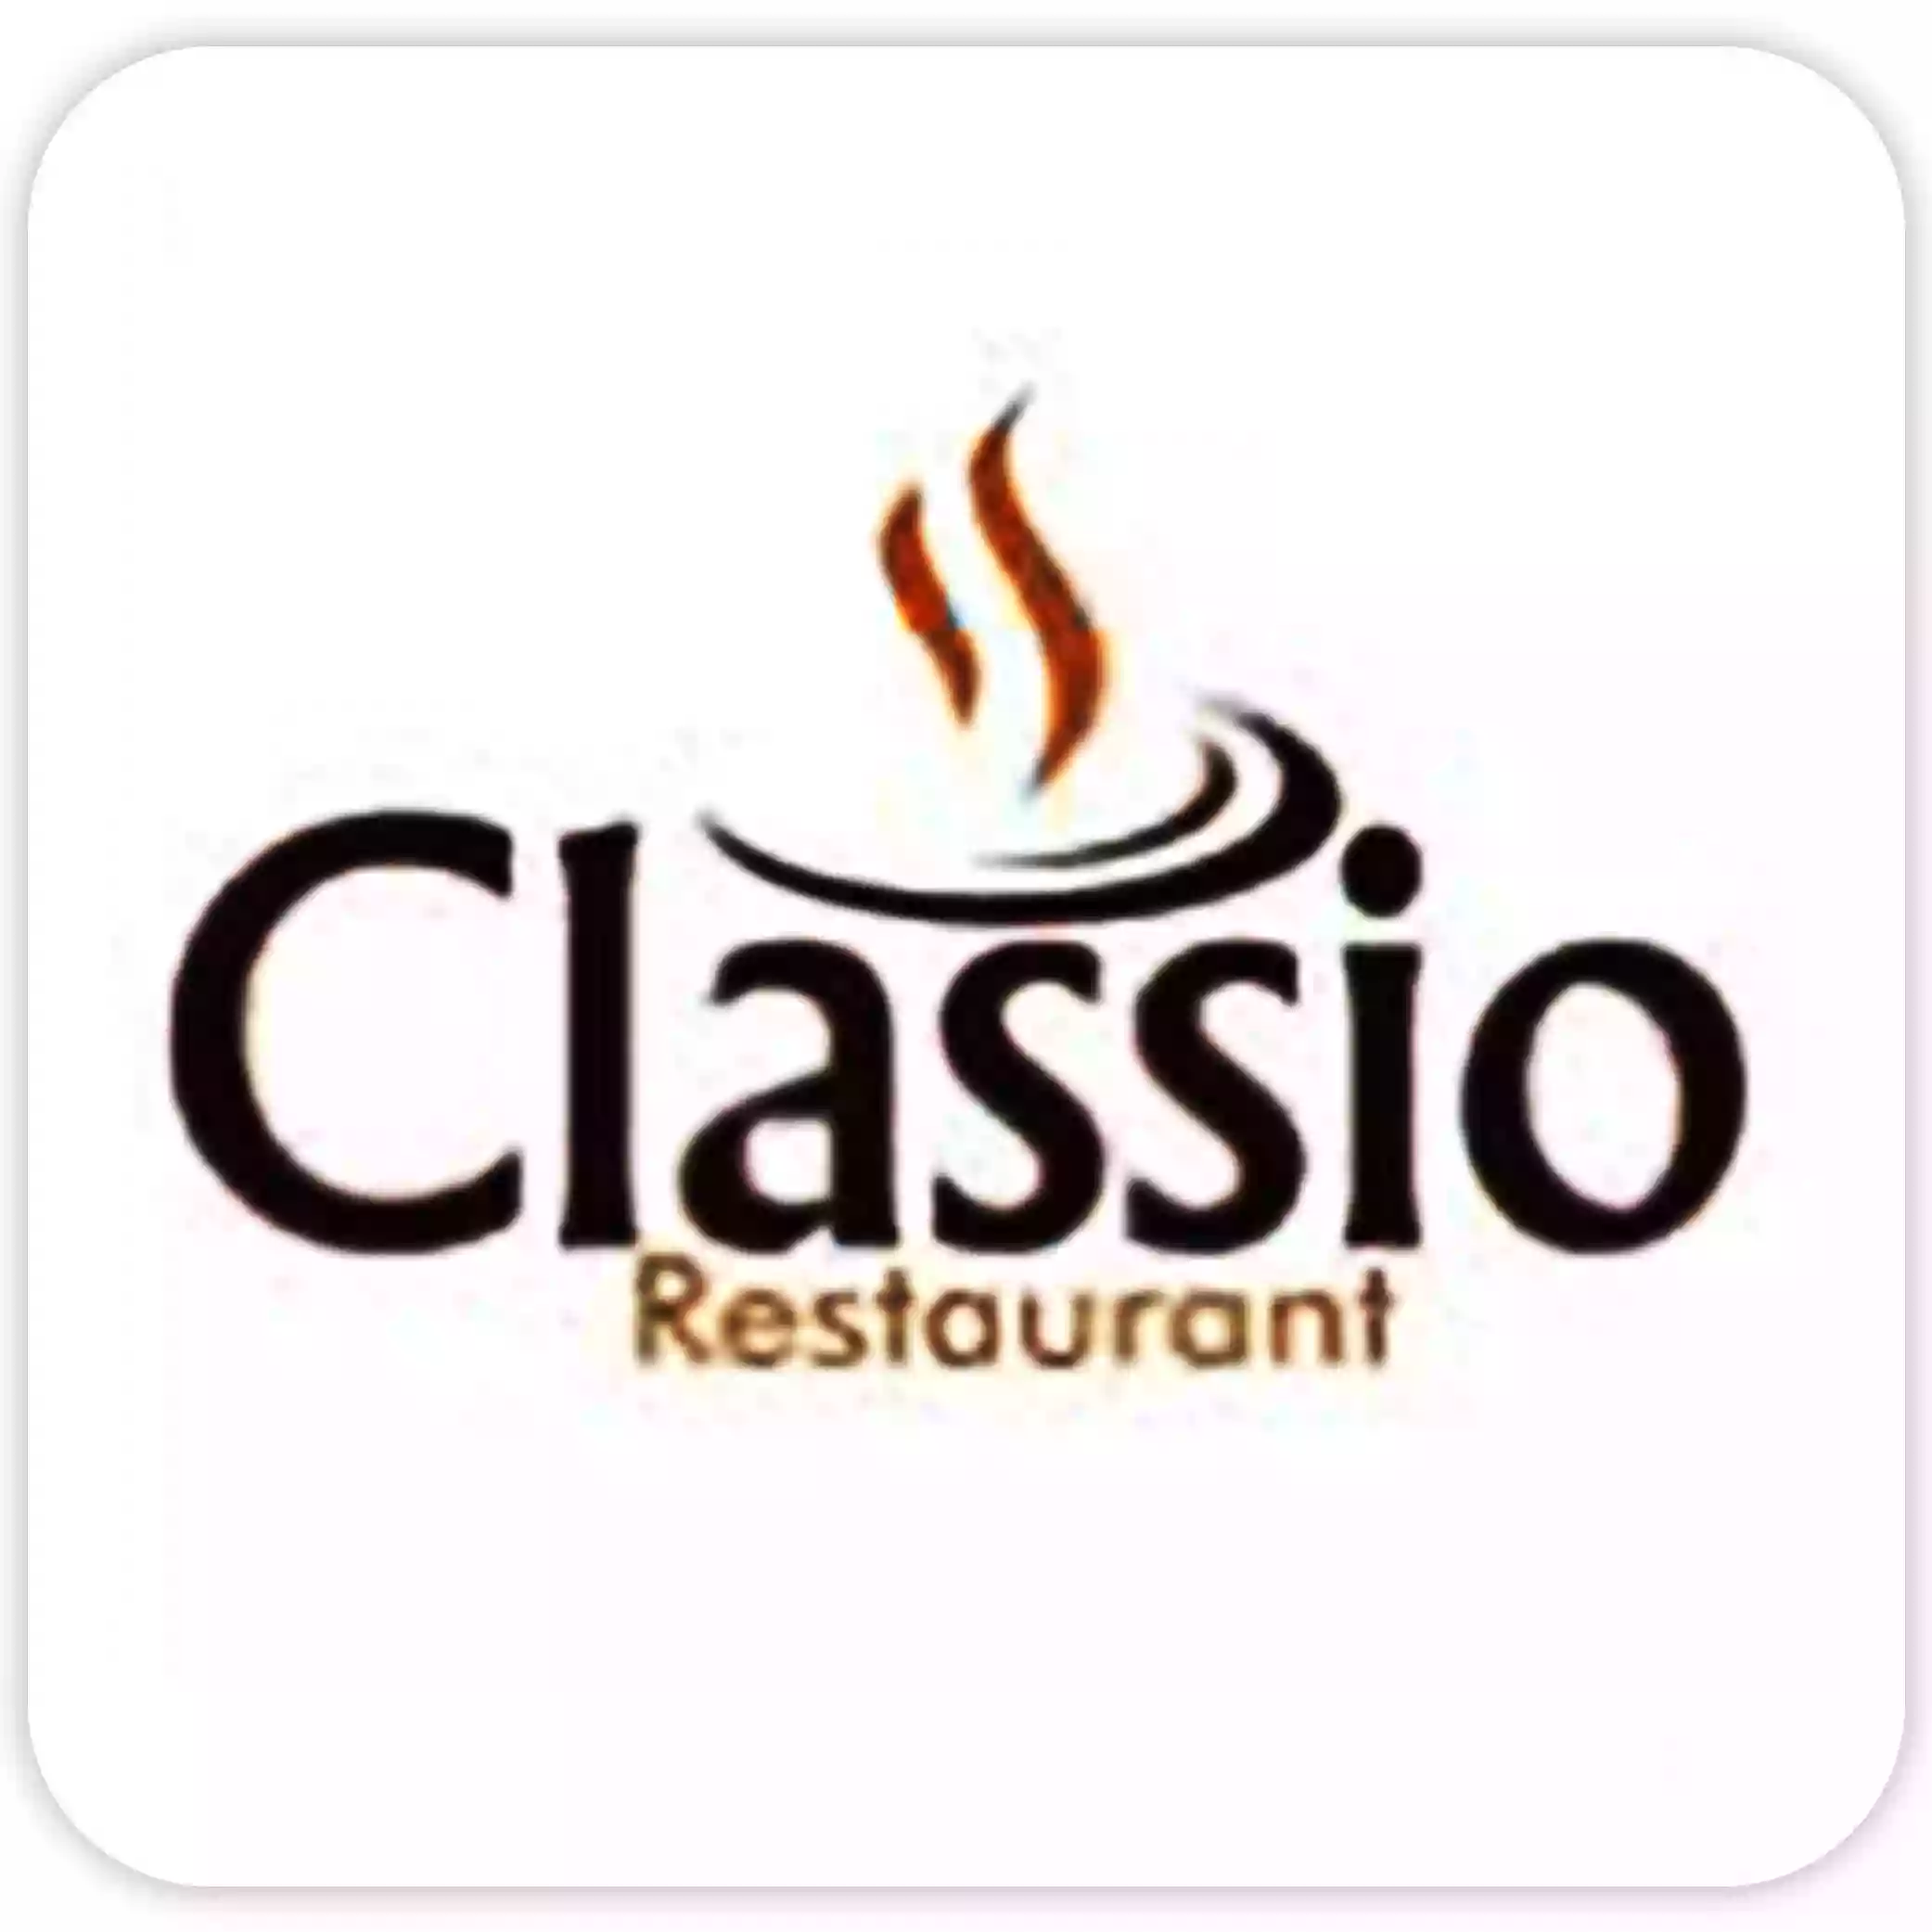 Classio Restaurant